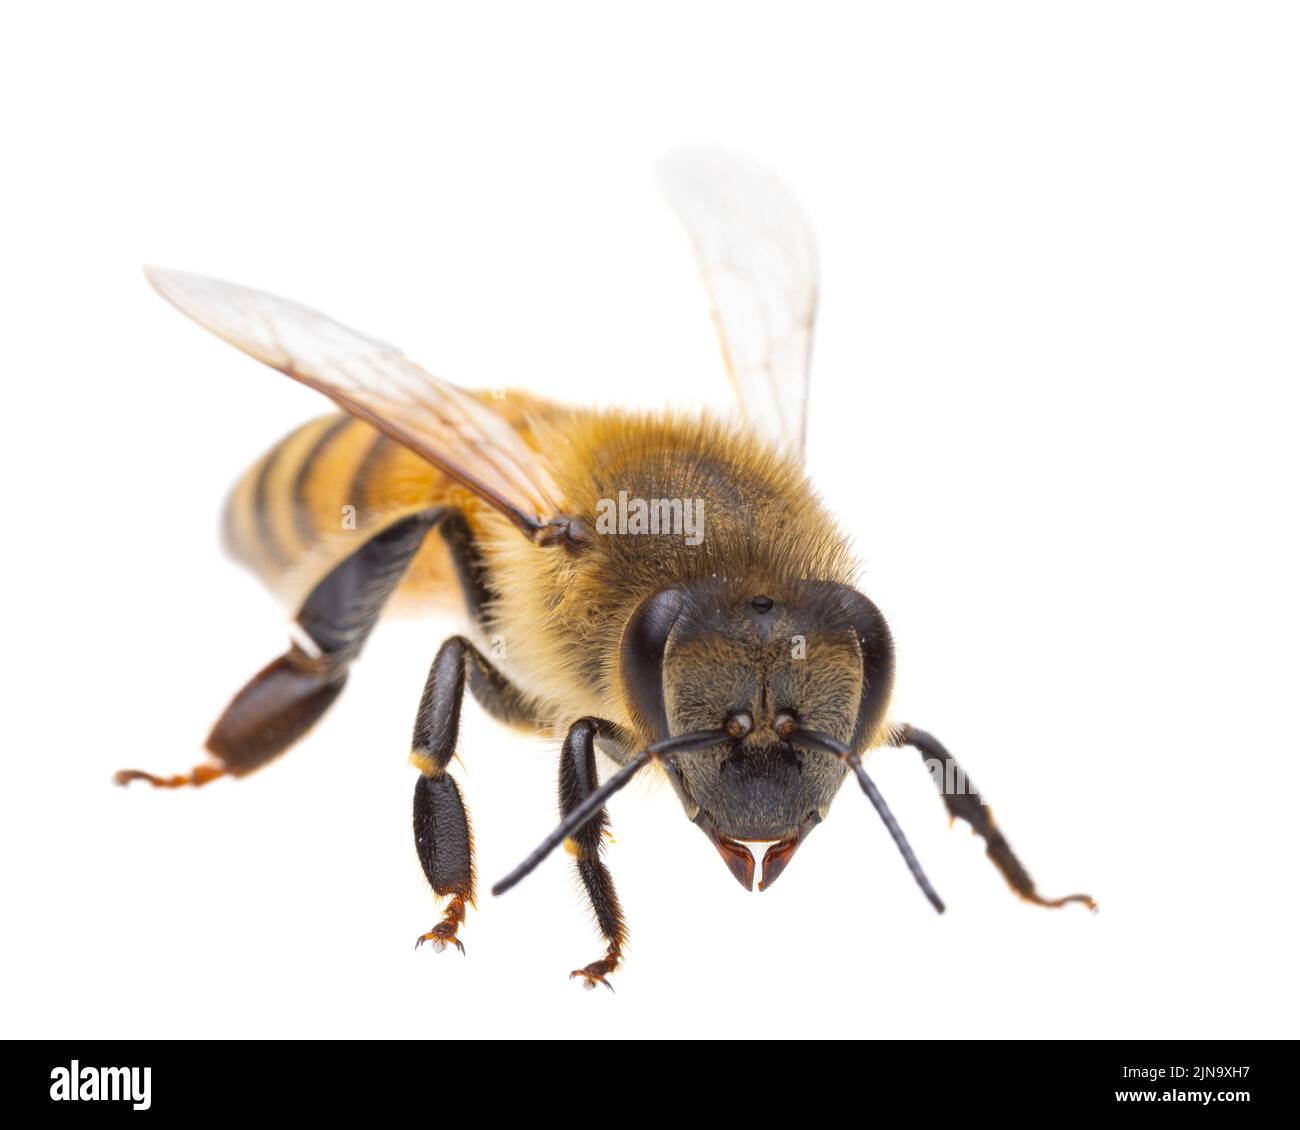 Insectos de europa - abejas: Macro vista lateral de la abeja melífera europea ( Apis mellifera) aislada sobre fondo blanco - cabeza al espectador Foto de stock